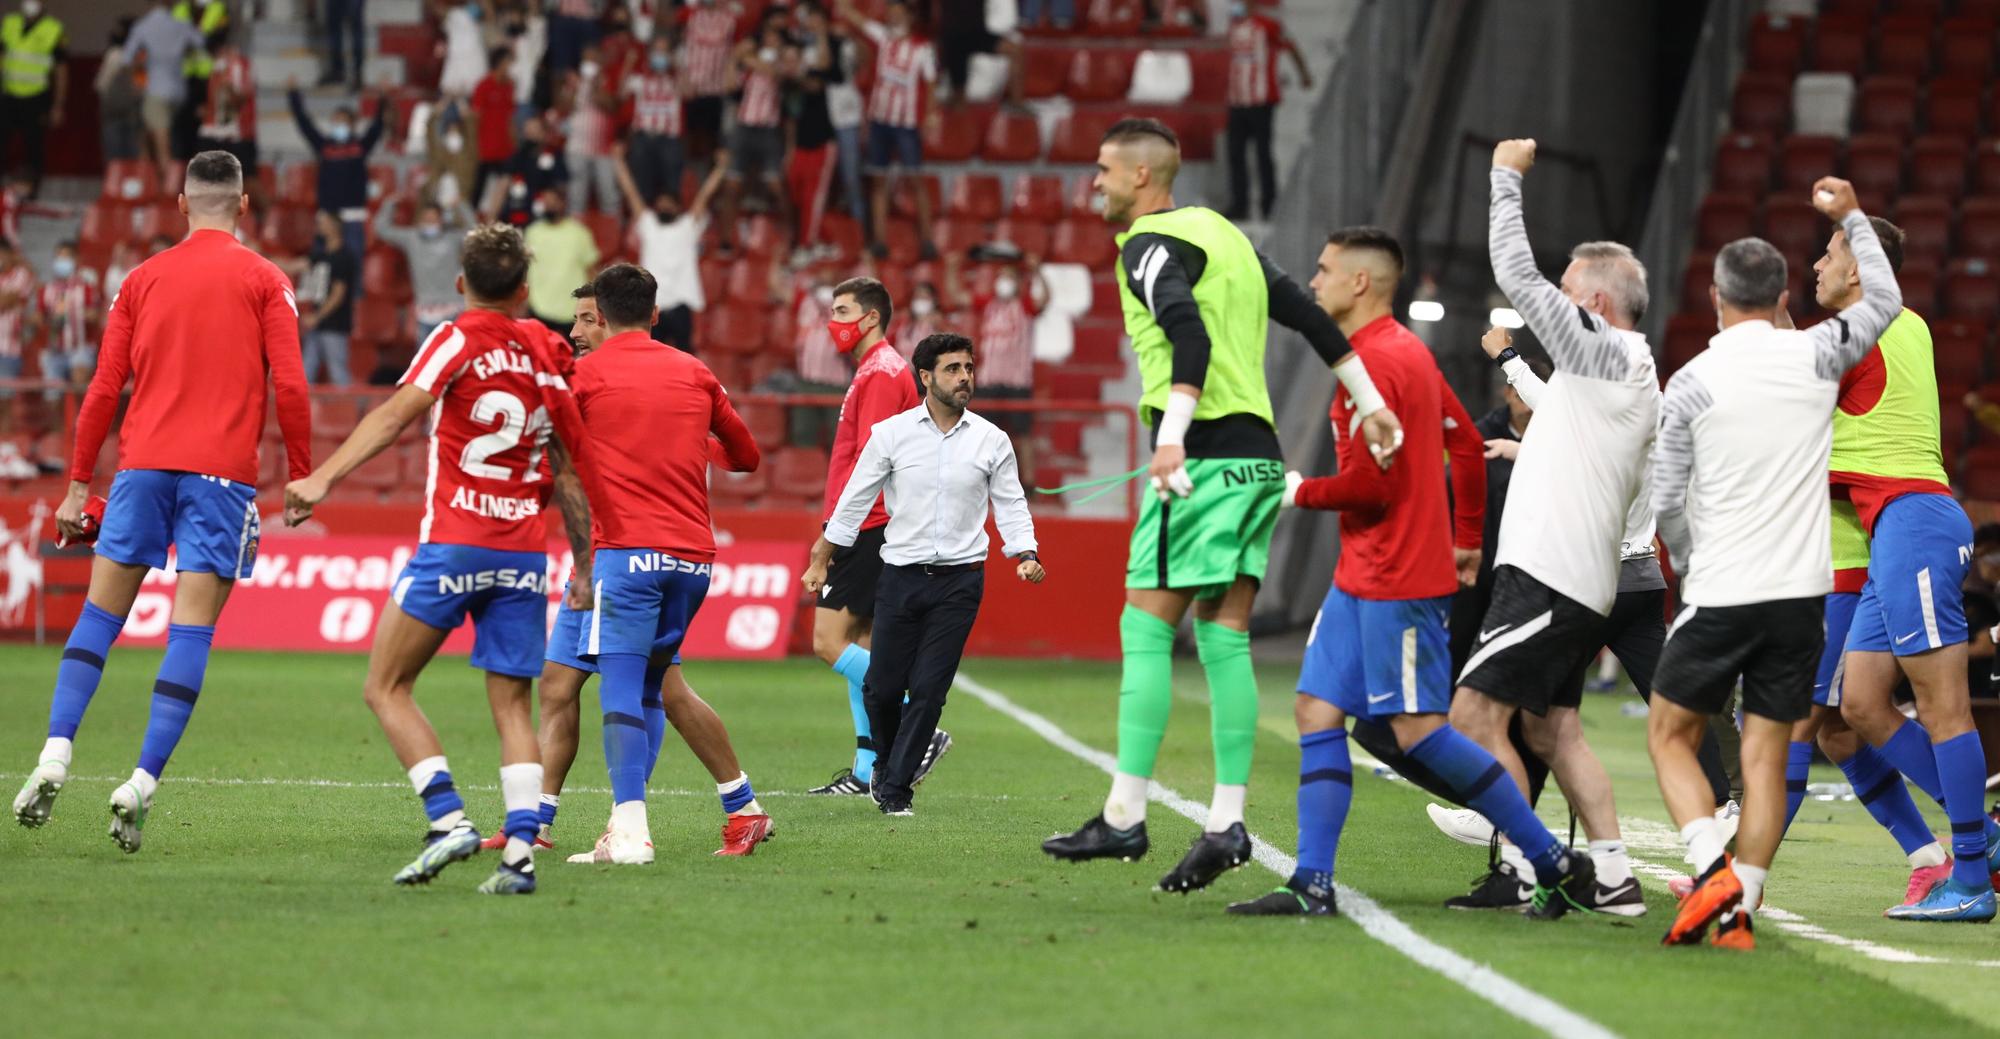 La victoria del Sporting ante el Leganés (2-1) en imágenes